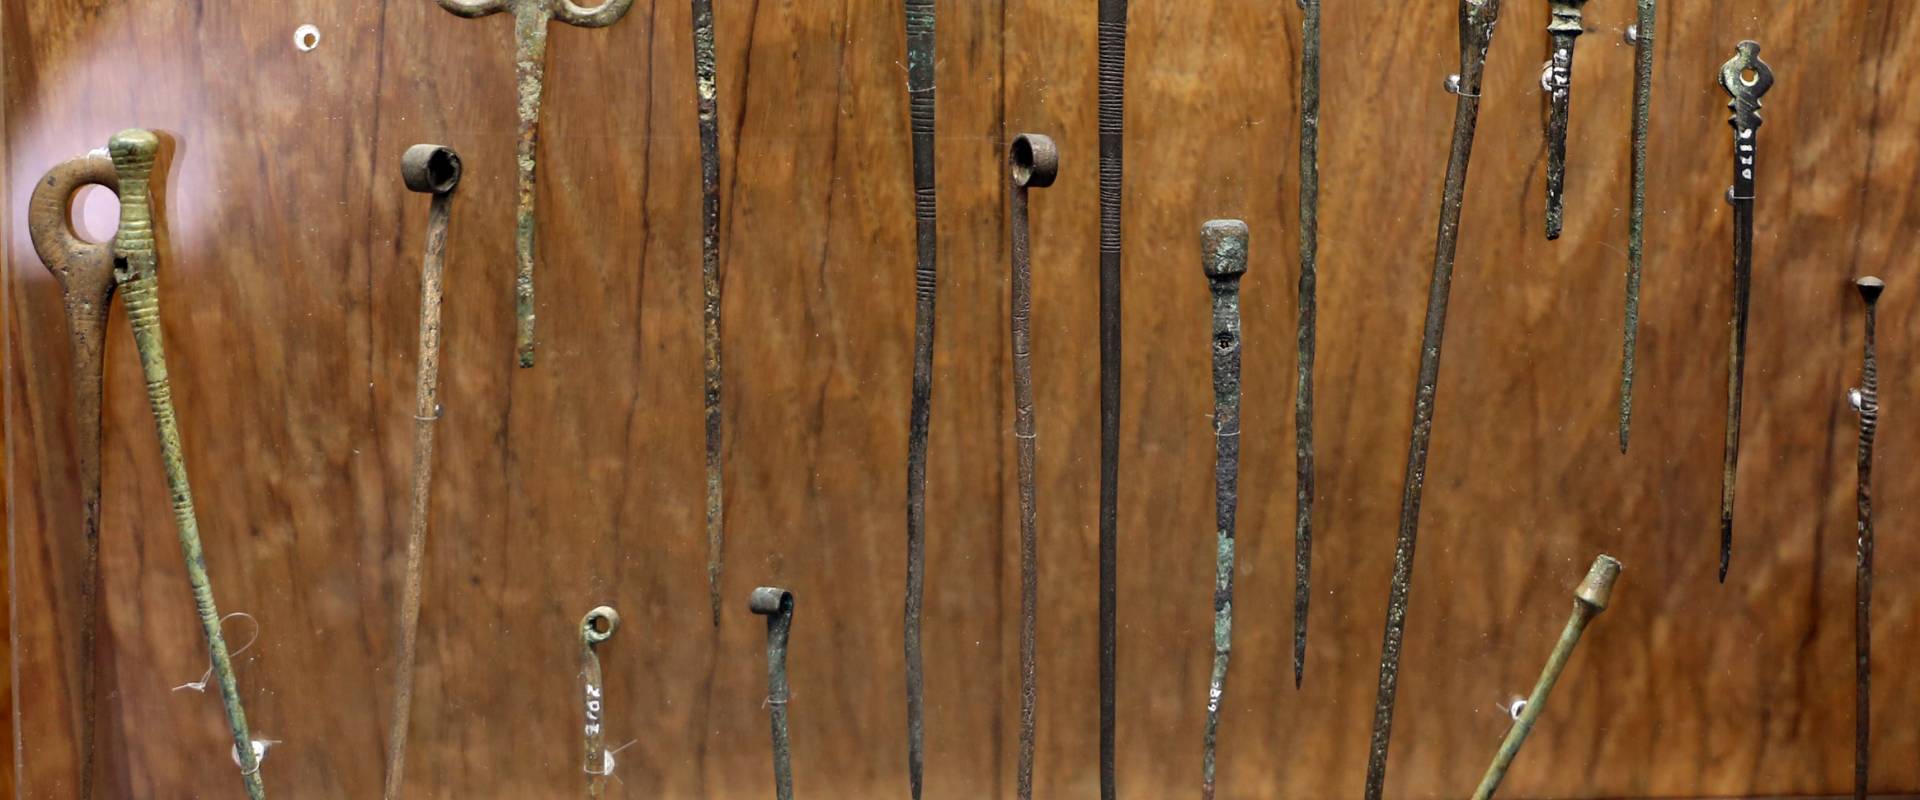 Bronzo medio e recente, spilloni, da castione dei marchesii, xvi-xii secolo ac. ca foto di Sailko